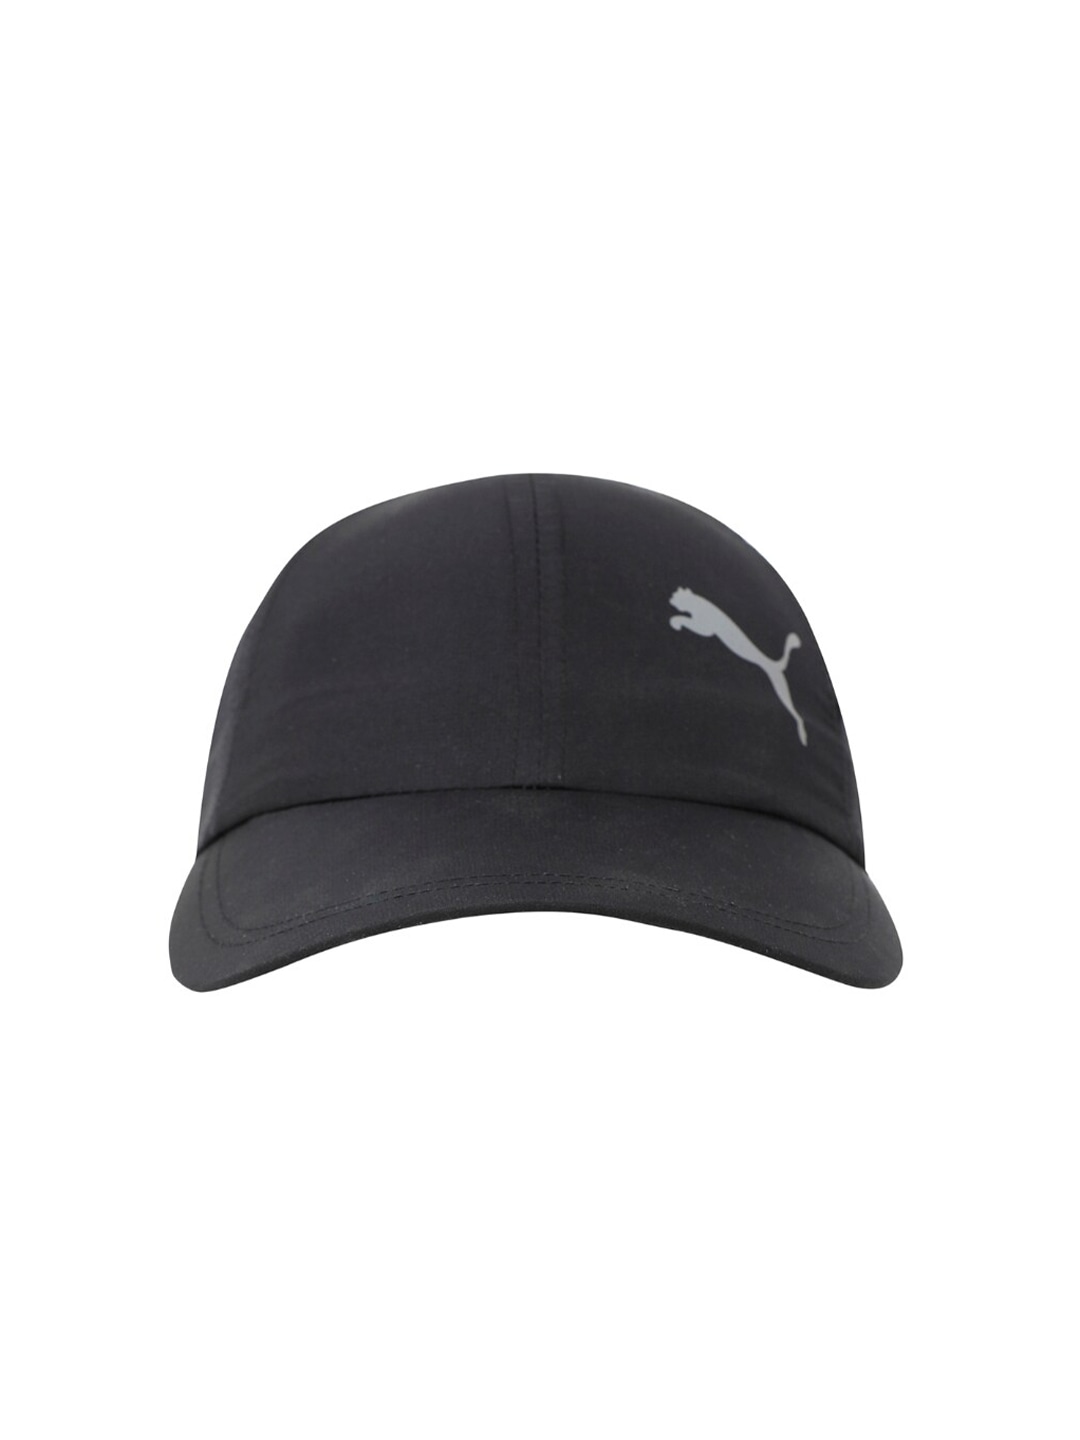 Accessories Caps | Puma Unisex Black ESS Running Cap - UN97420